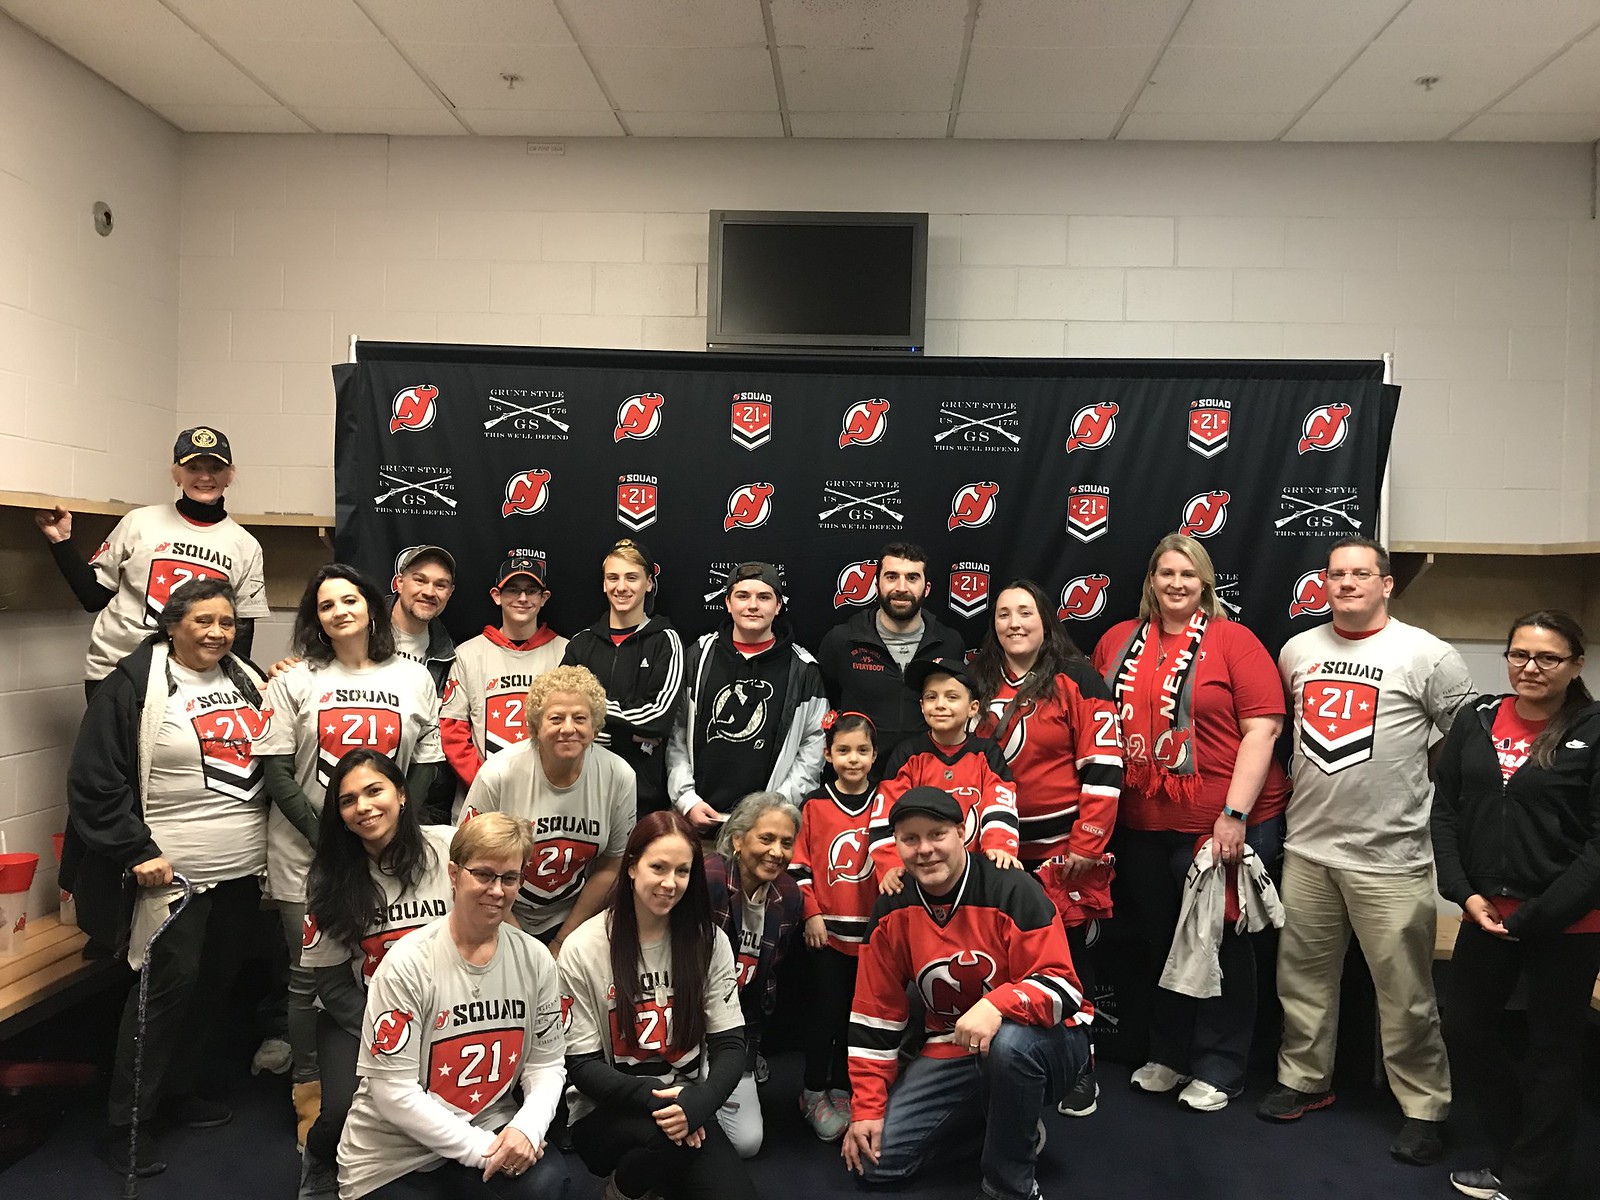 2018_T4T_NJ Devils Squad 21_ 10